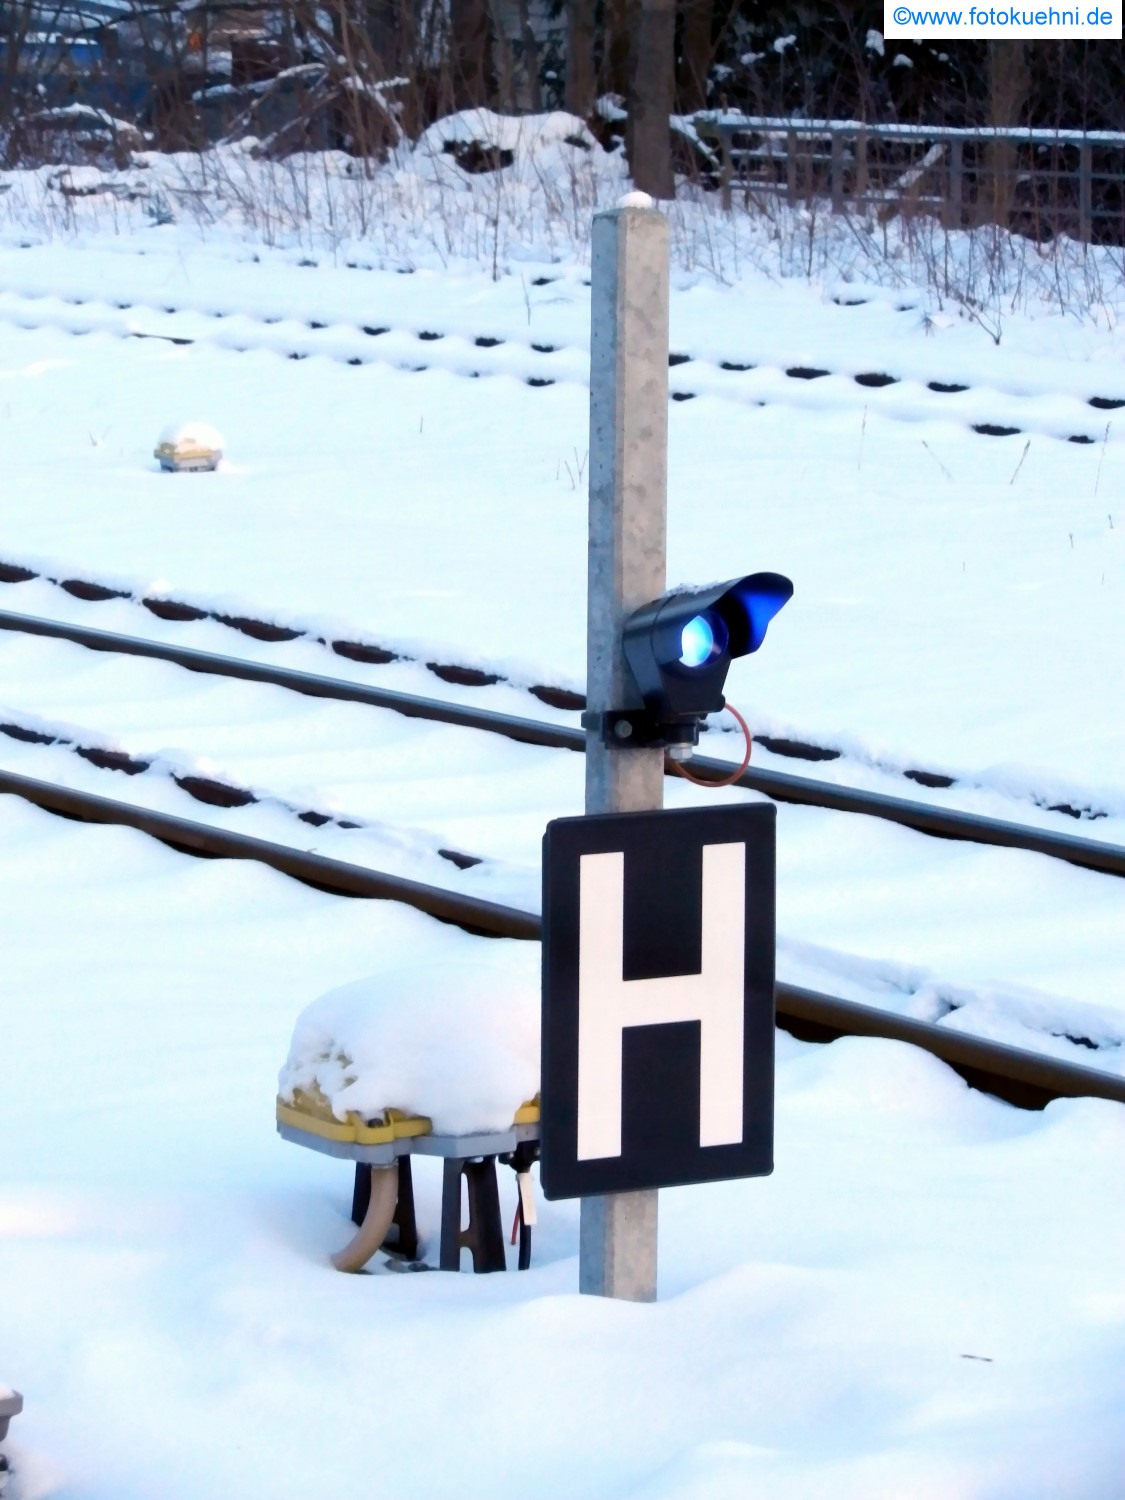 Haltetafel mit blauem Licht - Bahnhof Sebnitz am 26.01.2013